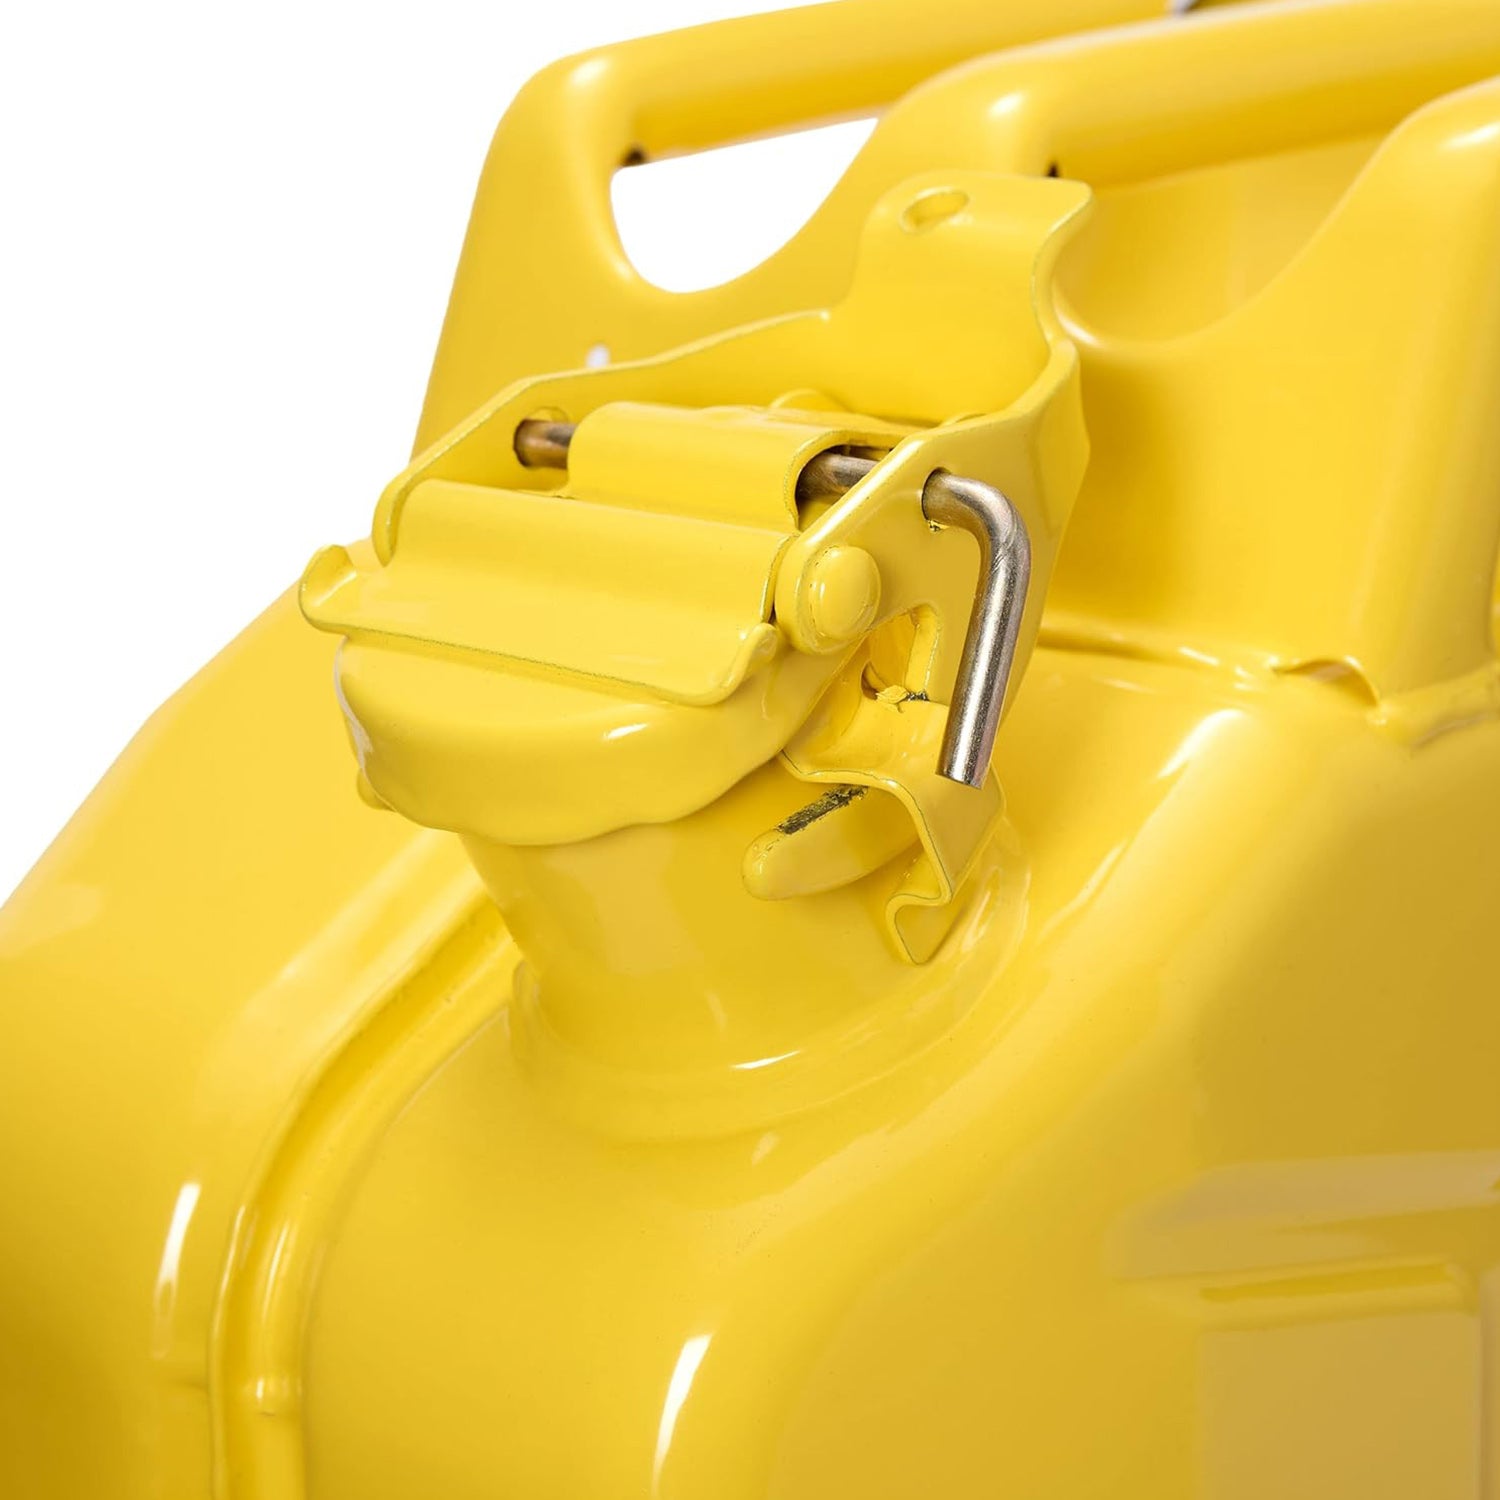 Kraftstoffkanister Metall - 10 Liter - gelb